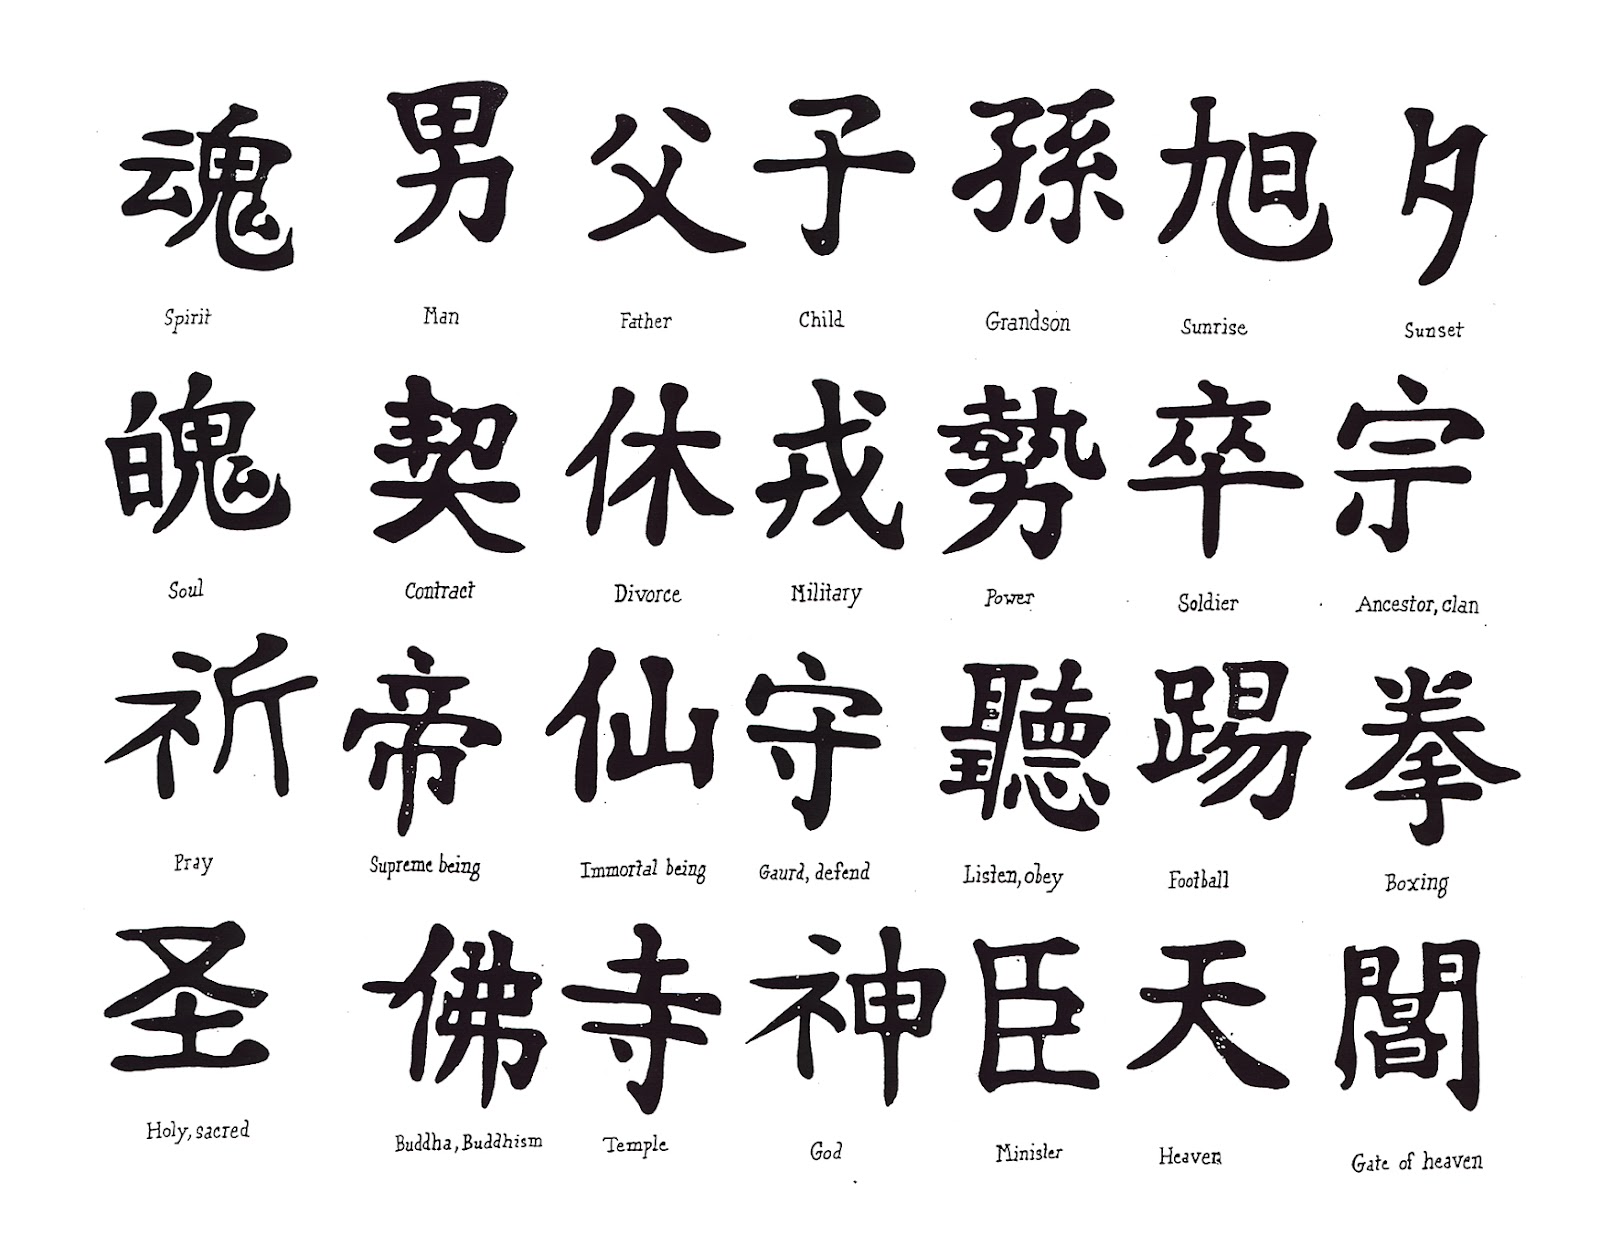 Kanji adalah salah satu dari empat set aksara yang digunakan dalam tulisan modern Jepang selain kana katakana